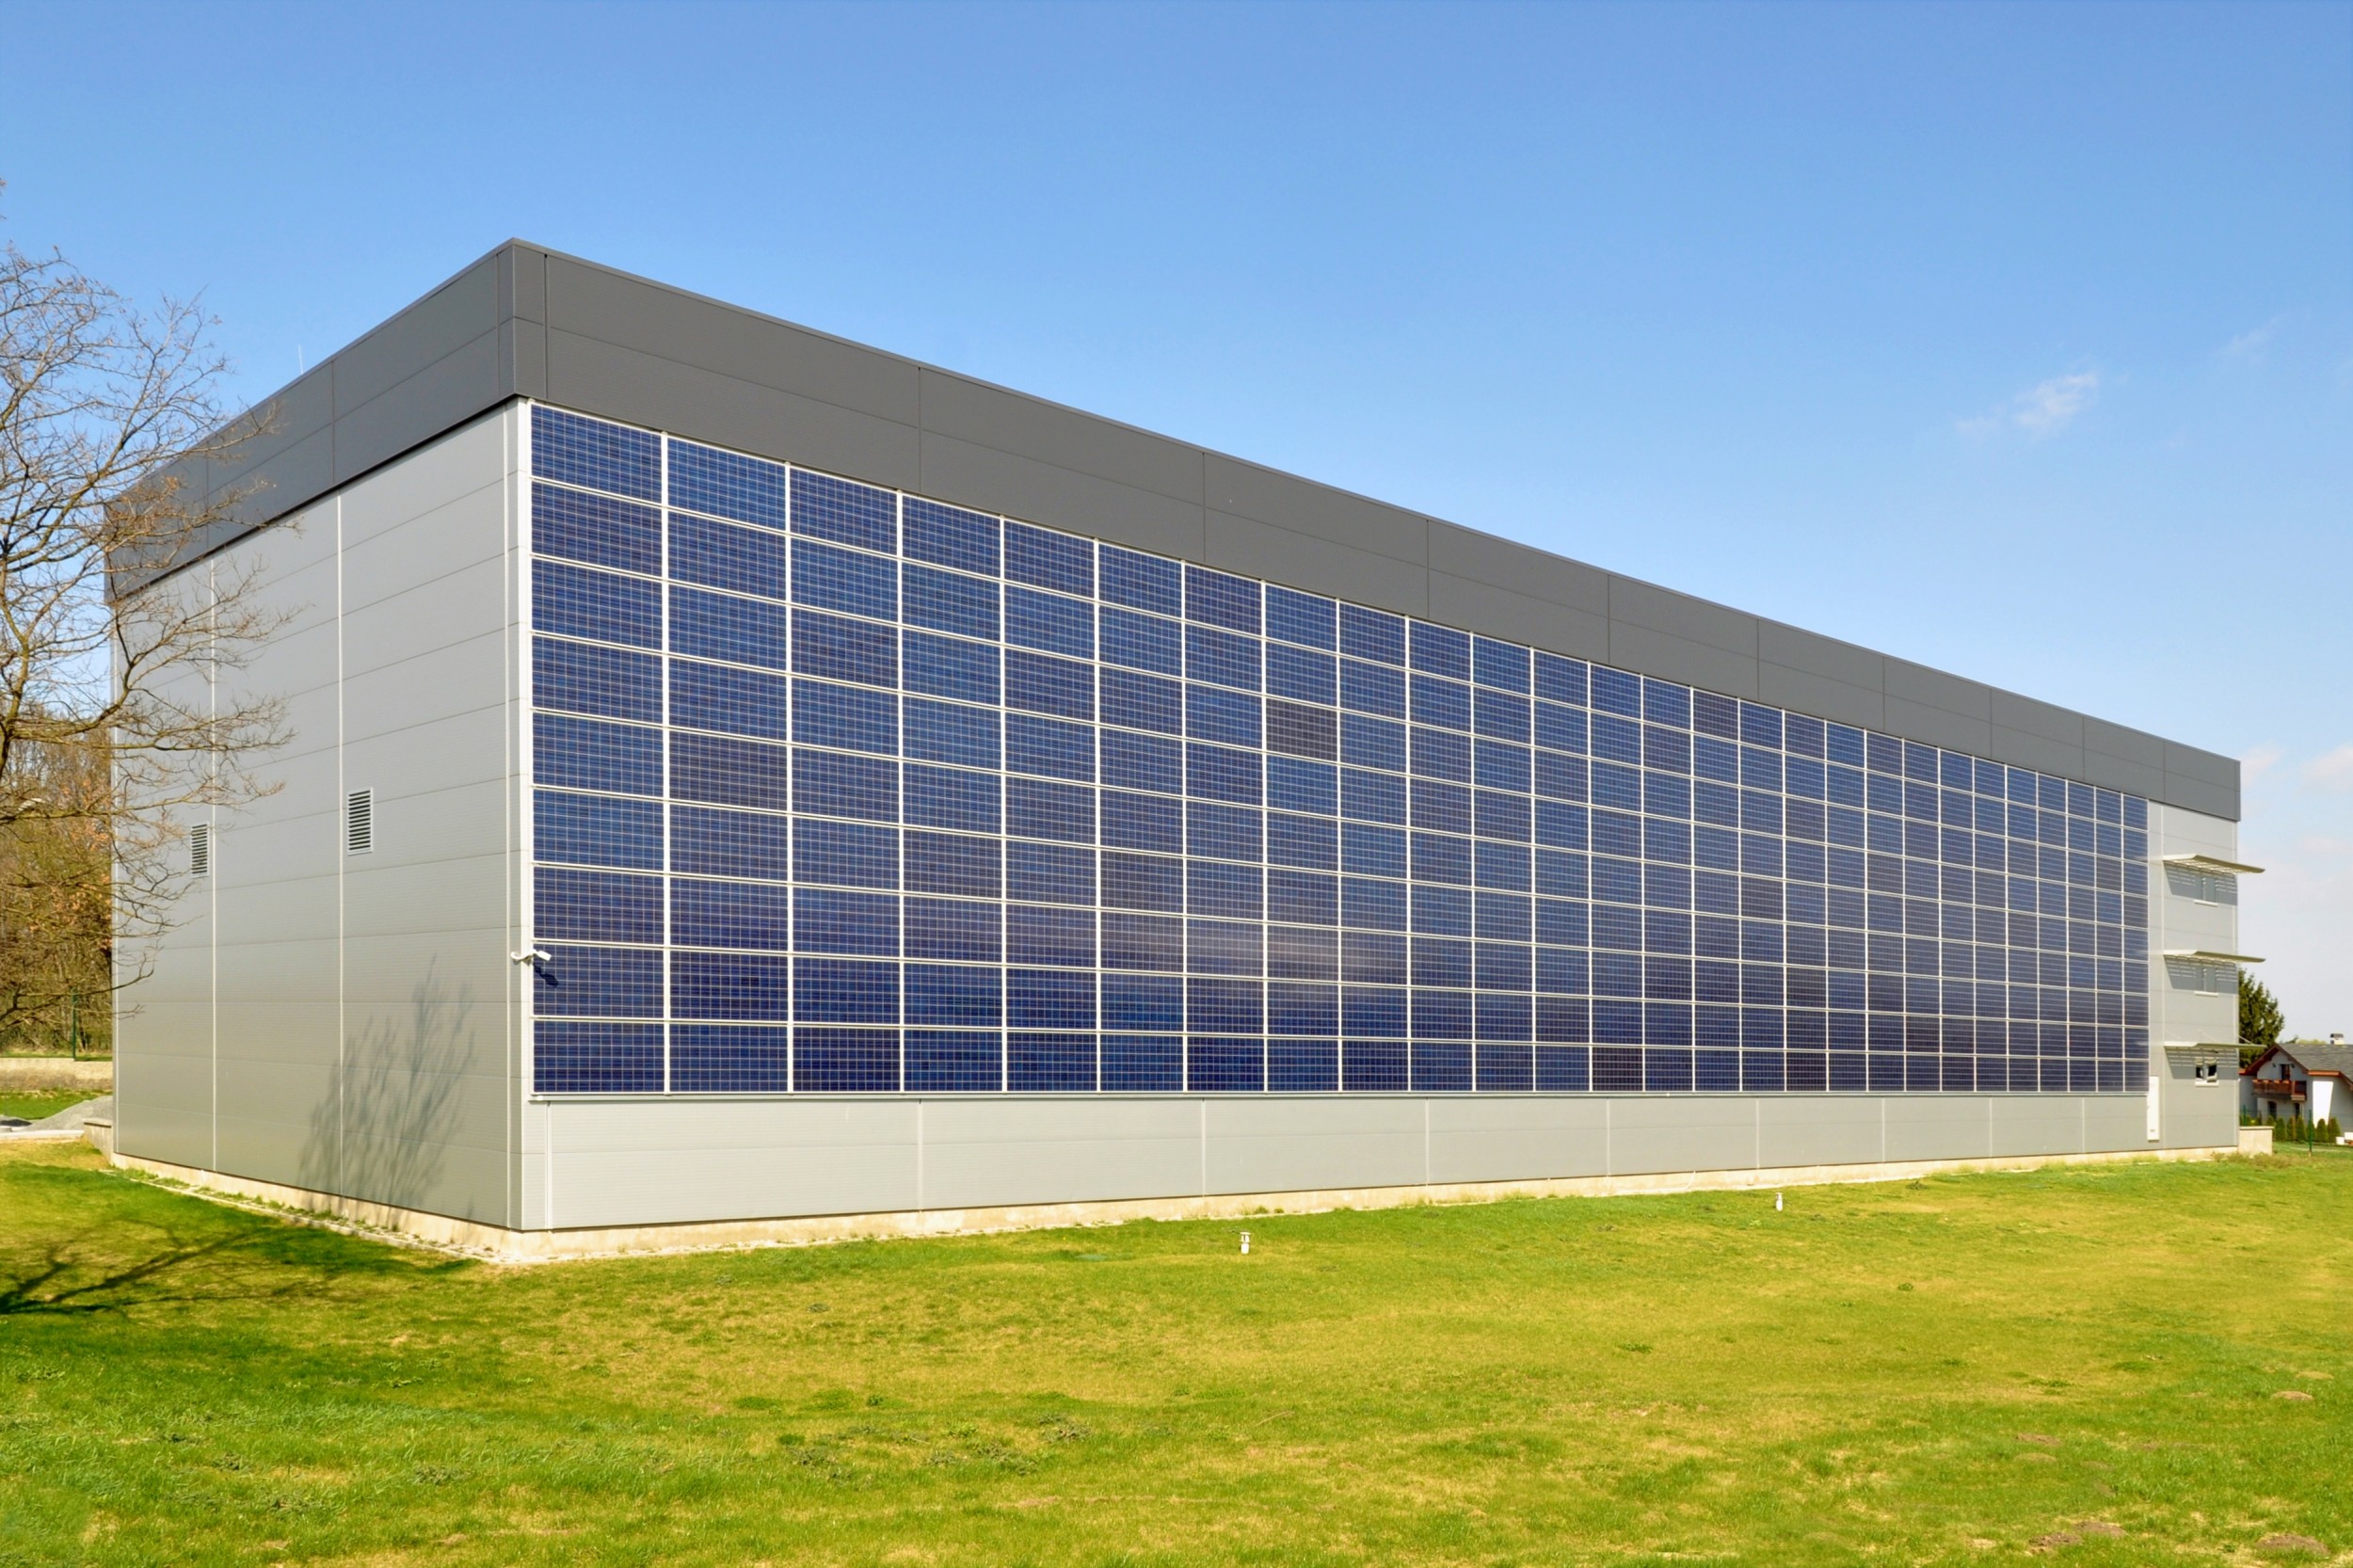 Solarzellen in Gebäudefassaden produzieren nicht nur Strom, sondern können auch zur Wärme- oder Schalldämmung eingesetzt werden.